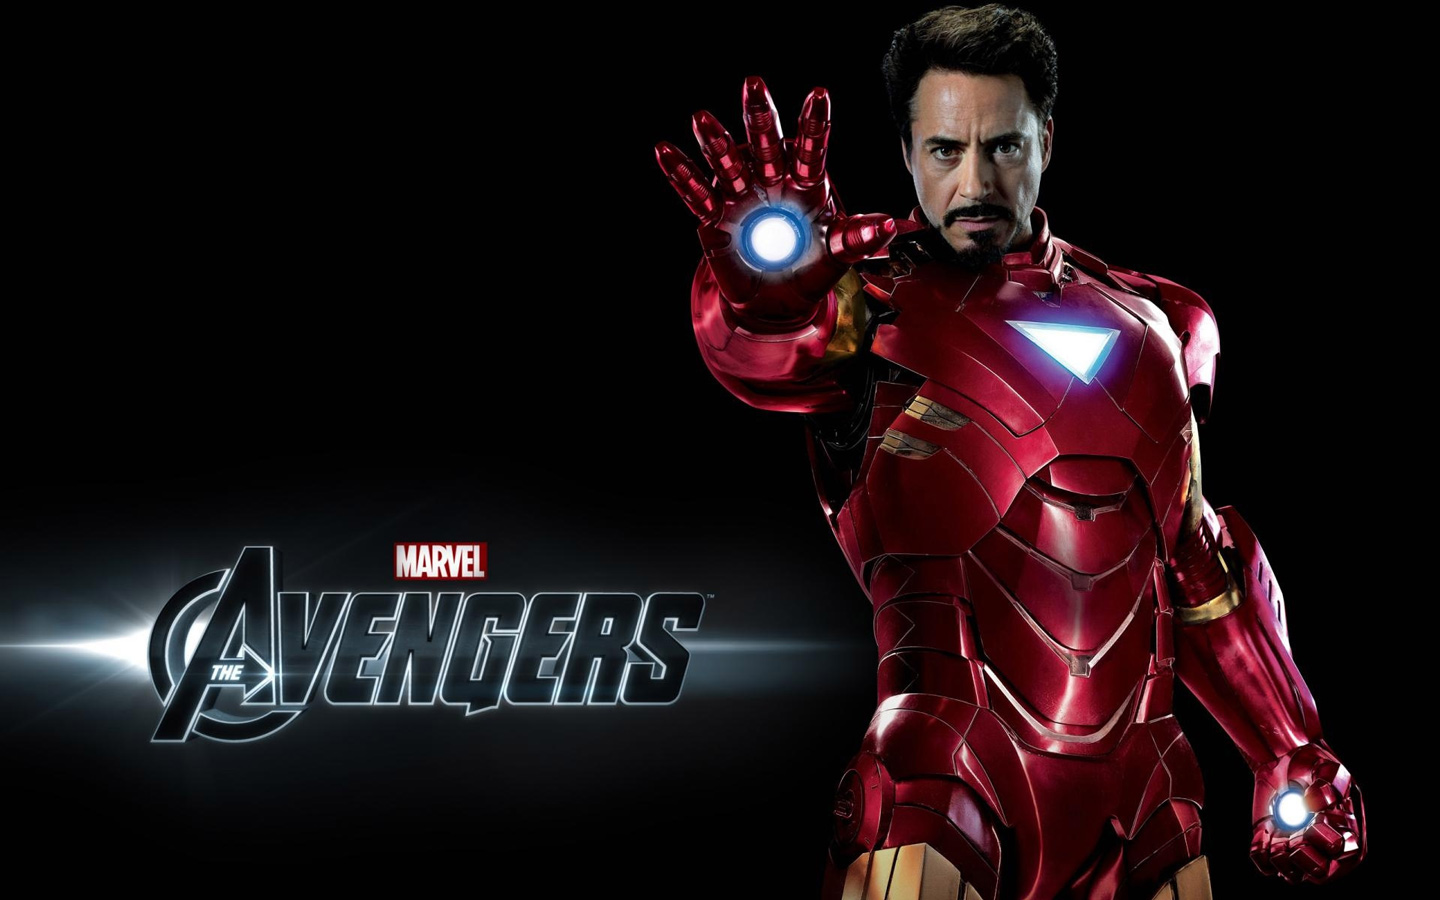 Size Desktop Wallpaper Of Iron Man Robert Downey Jr